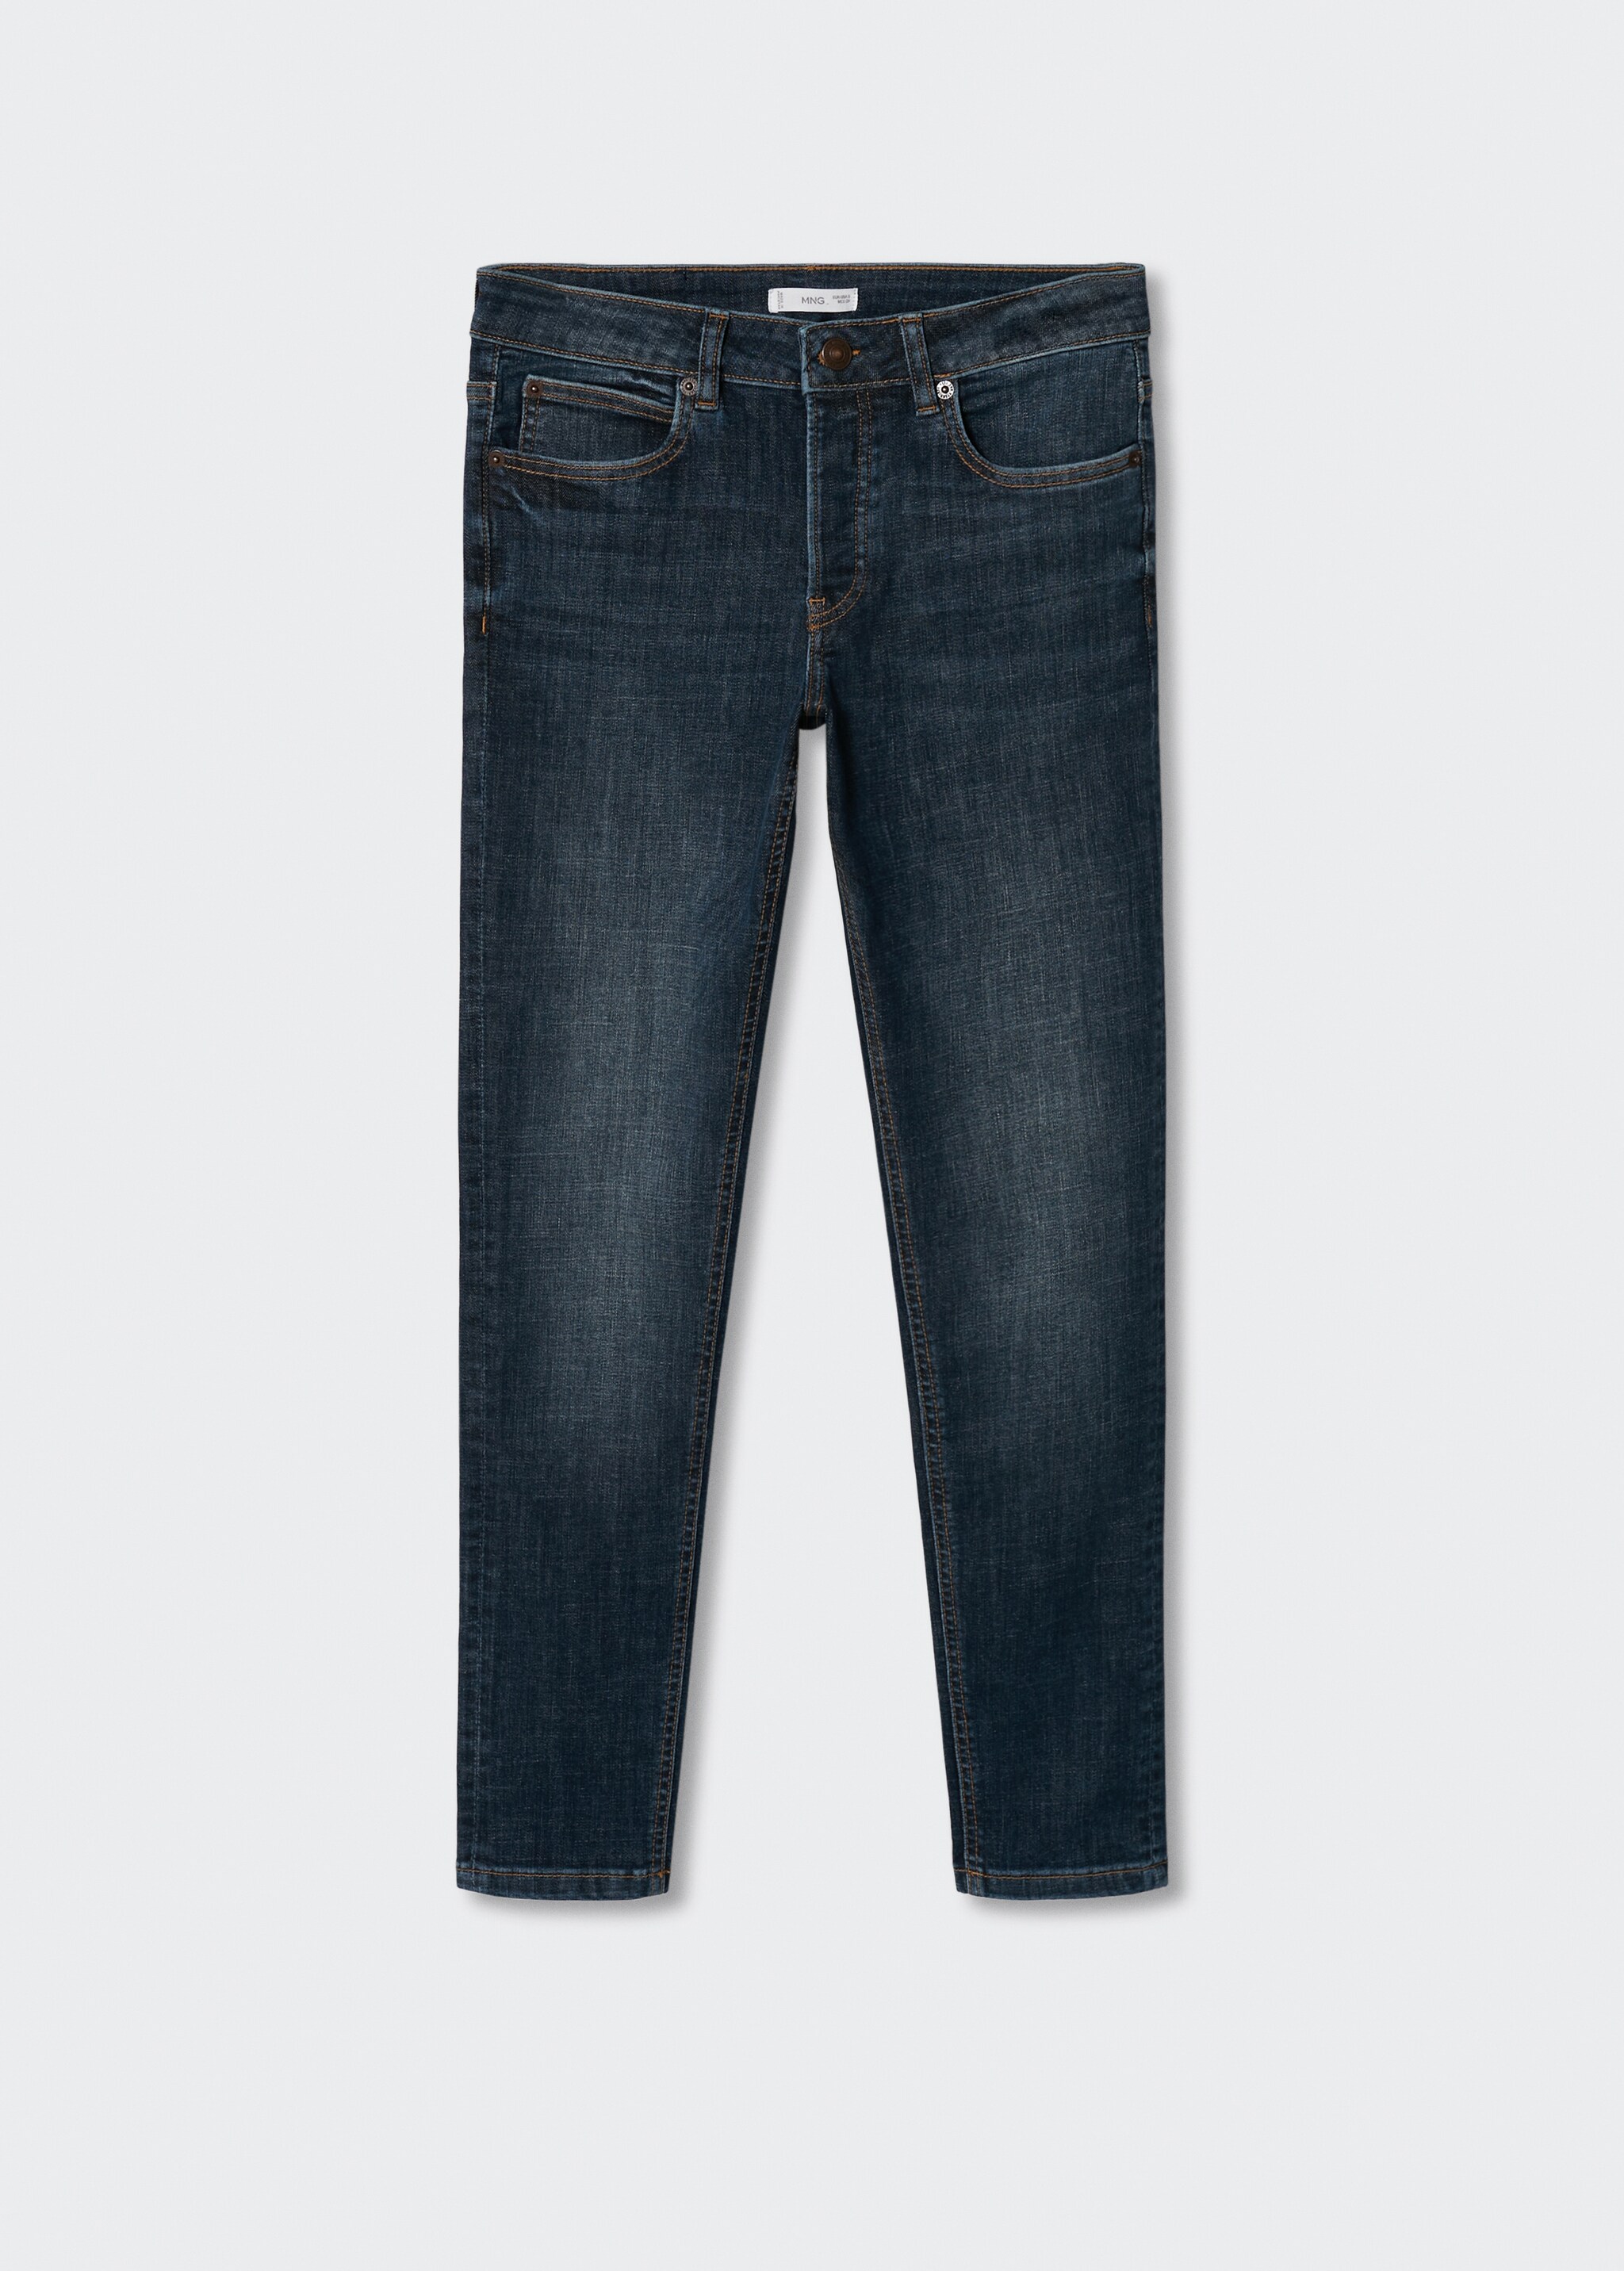 Jeans slim fit lavado medio - Artículo sin modelo